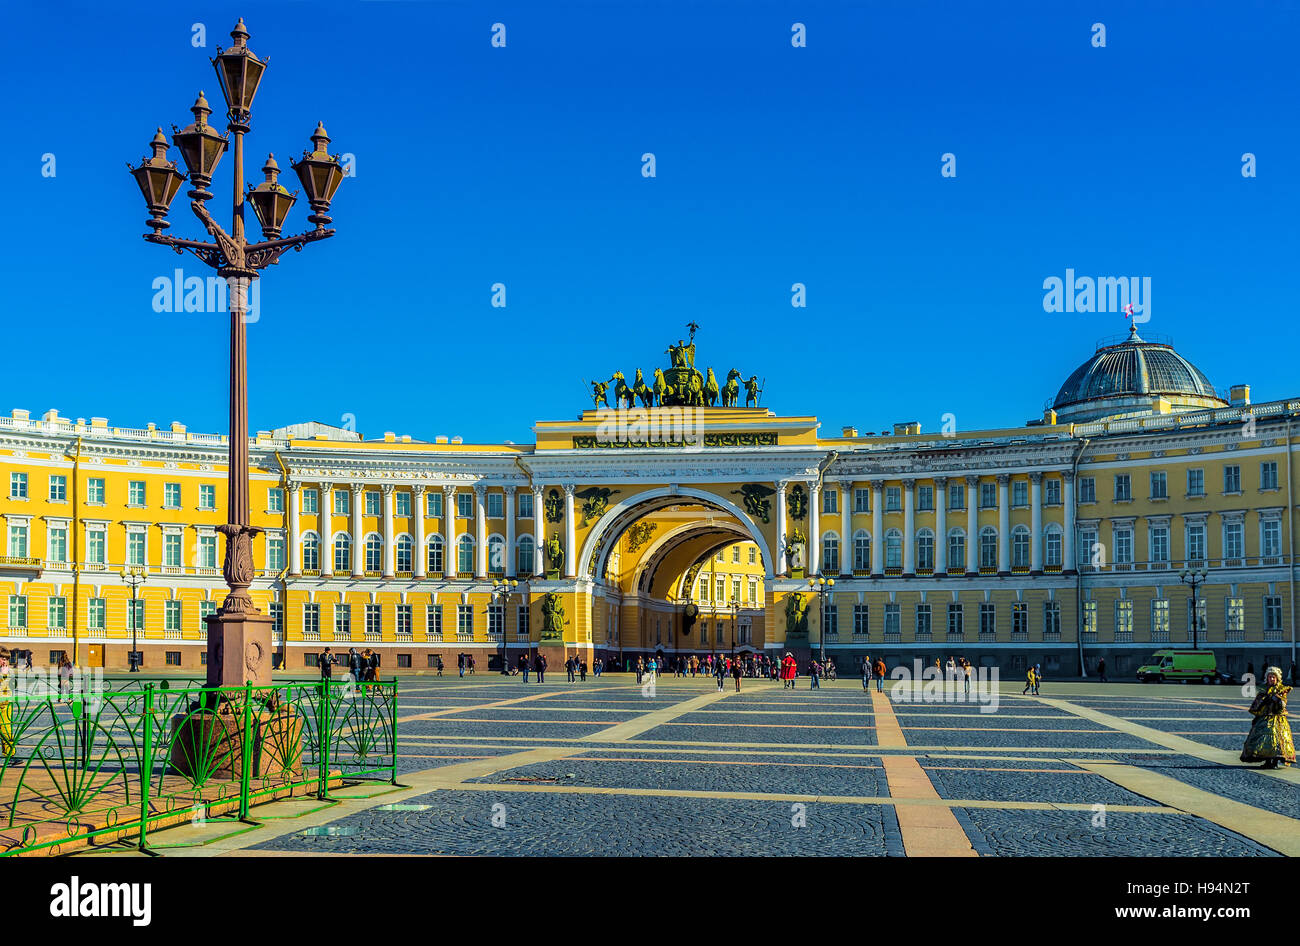 La piazza del palazzo è circondato da tutti i punti storici di riferimento e potrebbe essere denominato il più bel squres in Russia Foto Stock